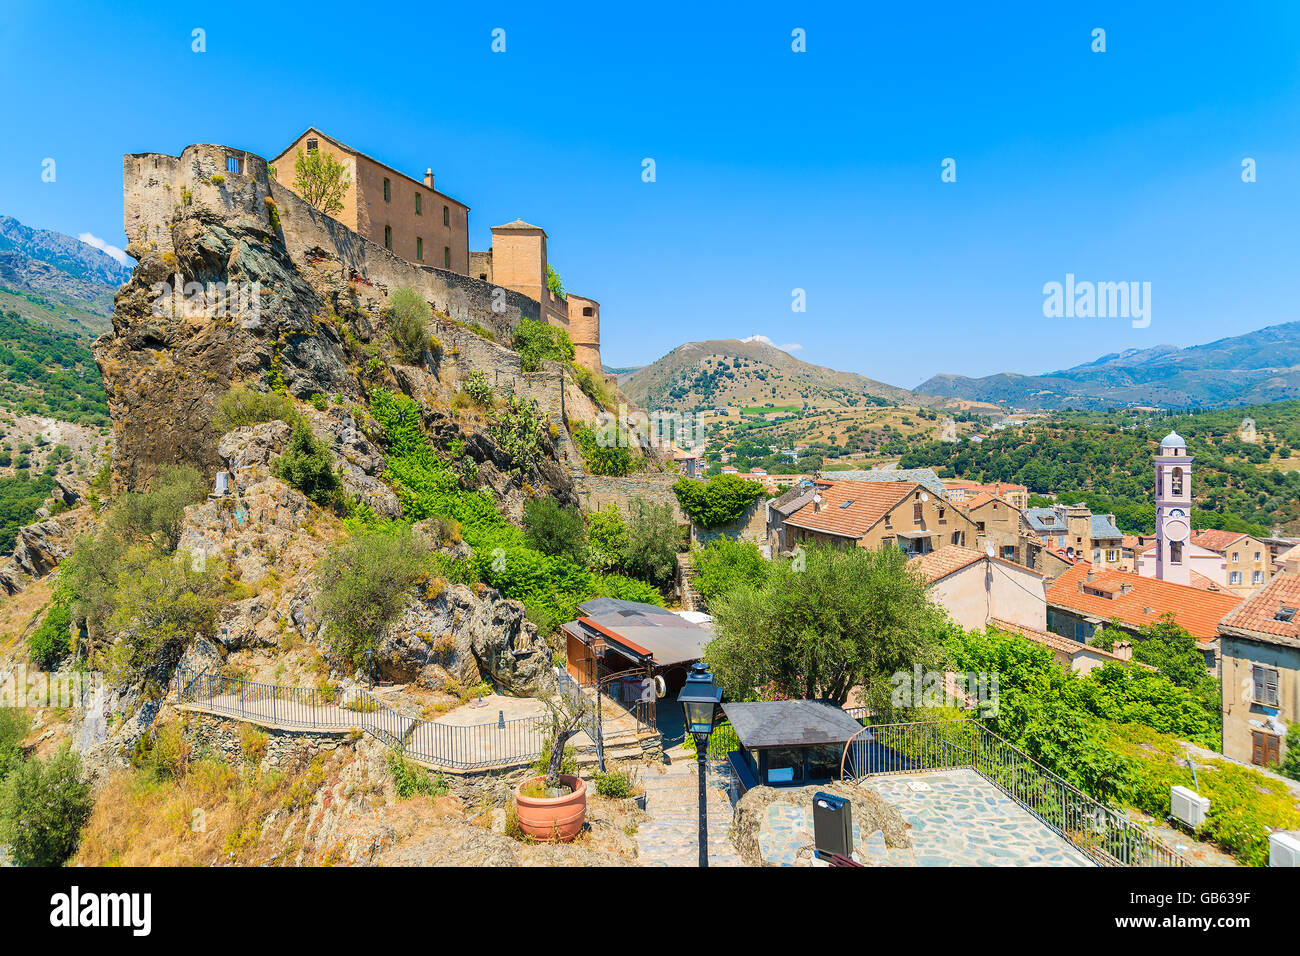 Citadelle construite sur une colline dans la ville de Corte, Corse, France Banque D'Images